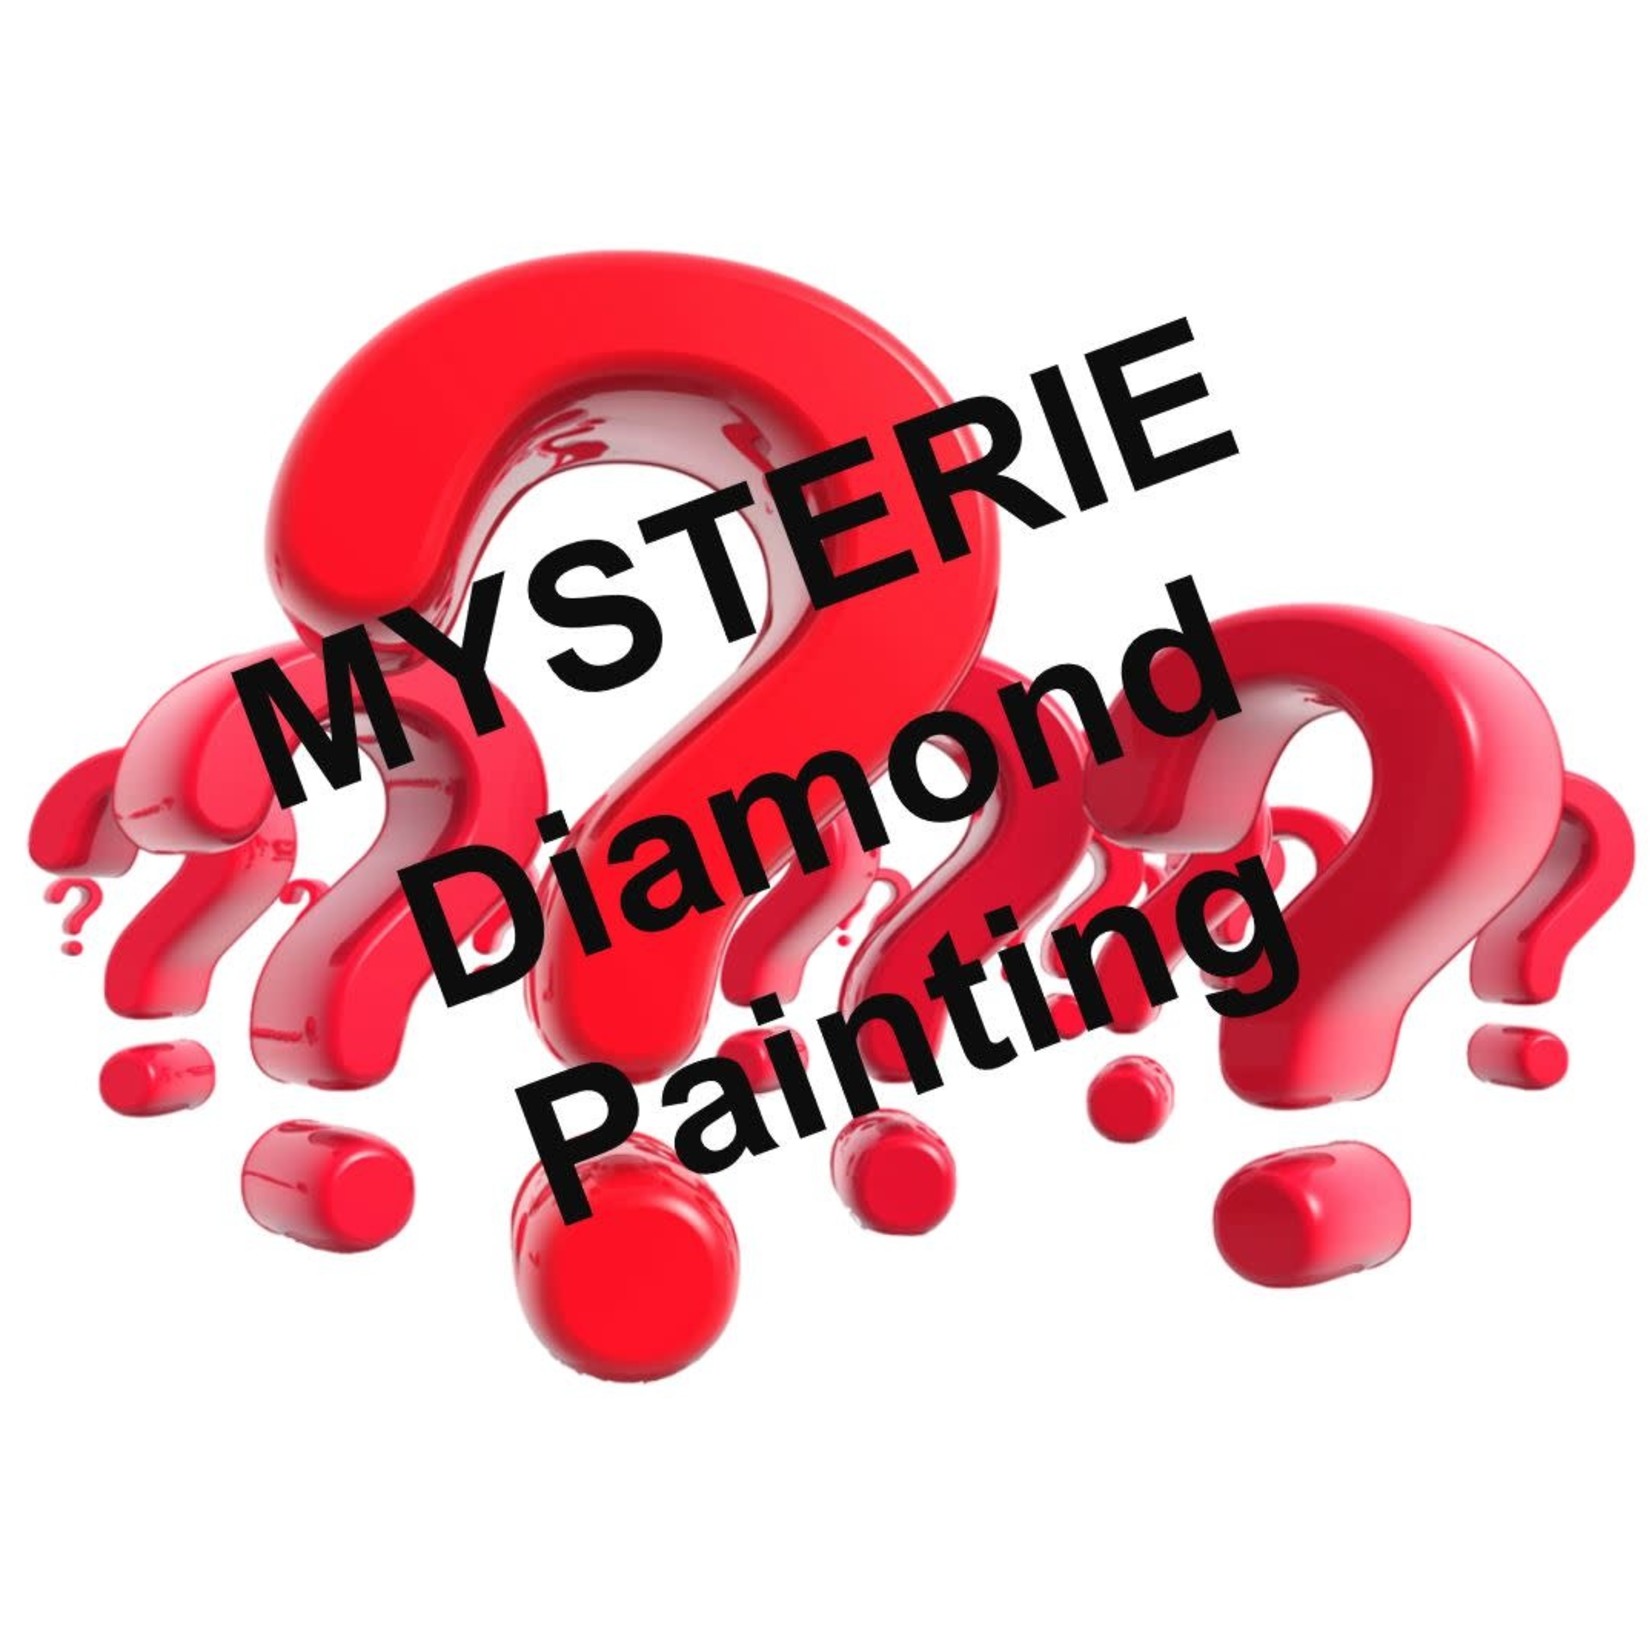 Mysterie Diamond Painting